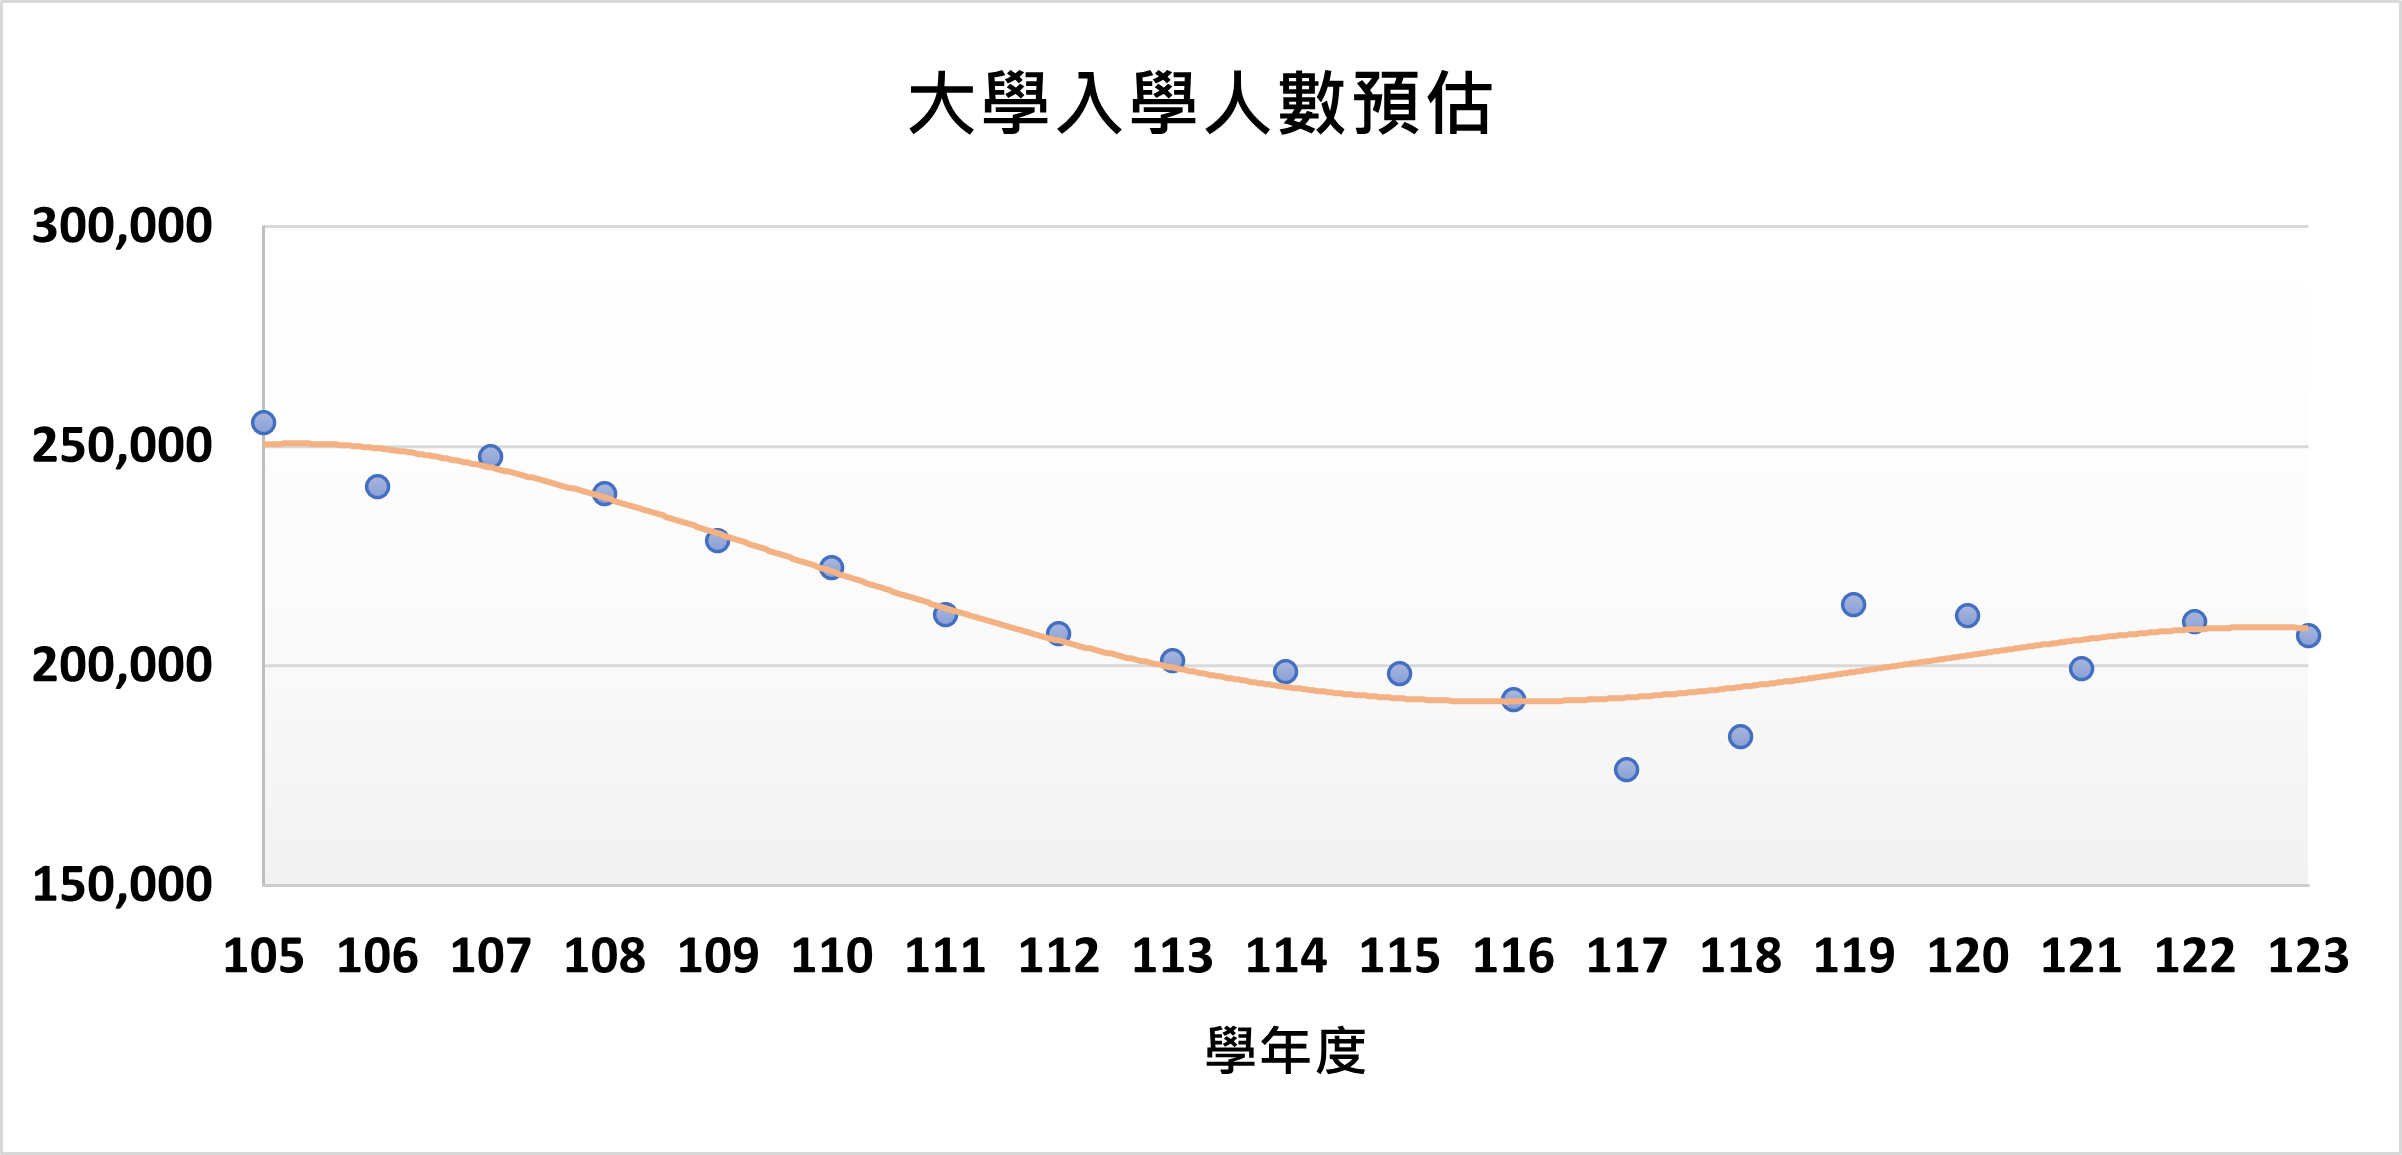 105-123學年度入學人數預估